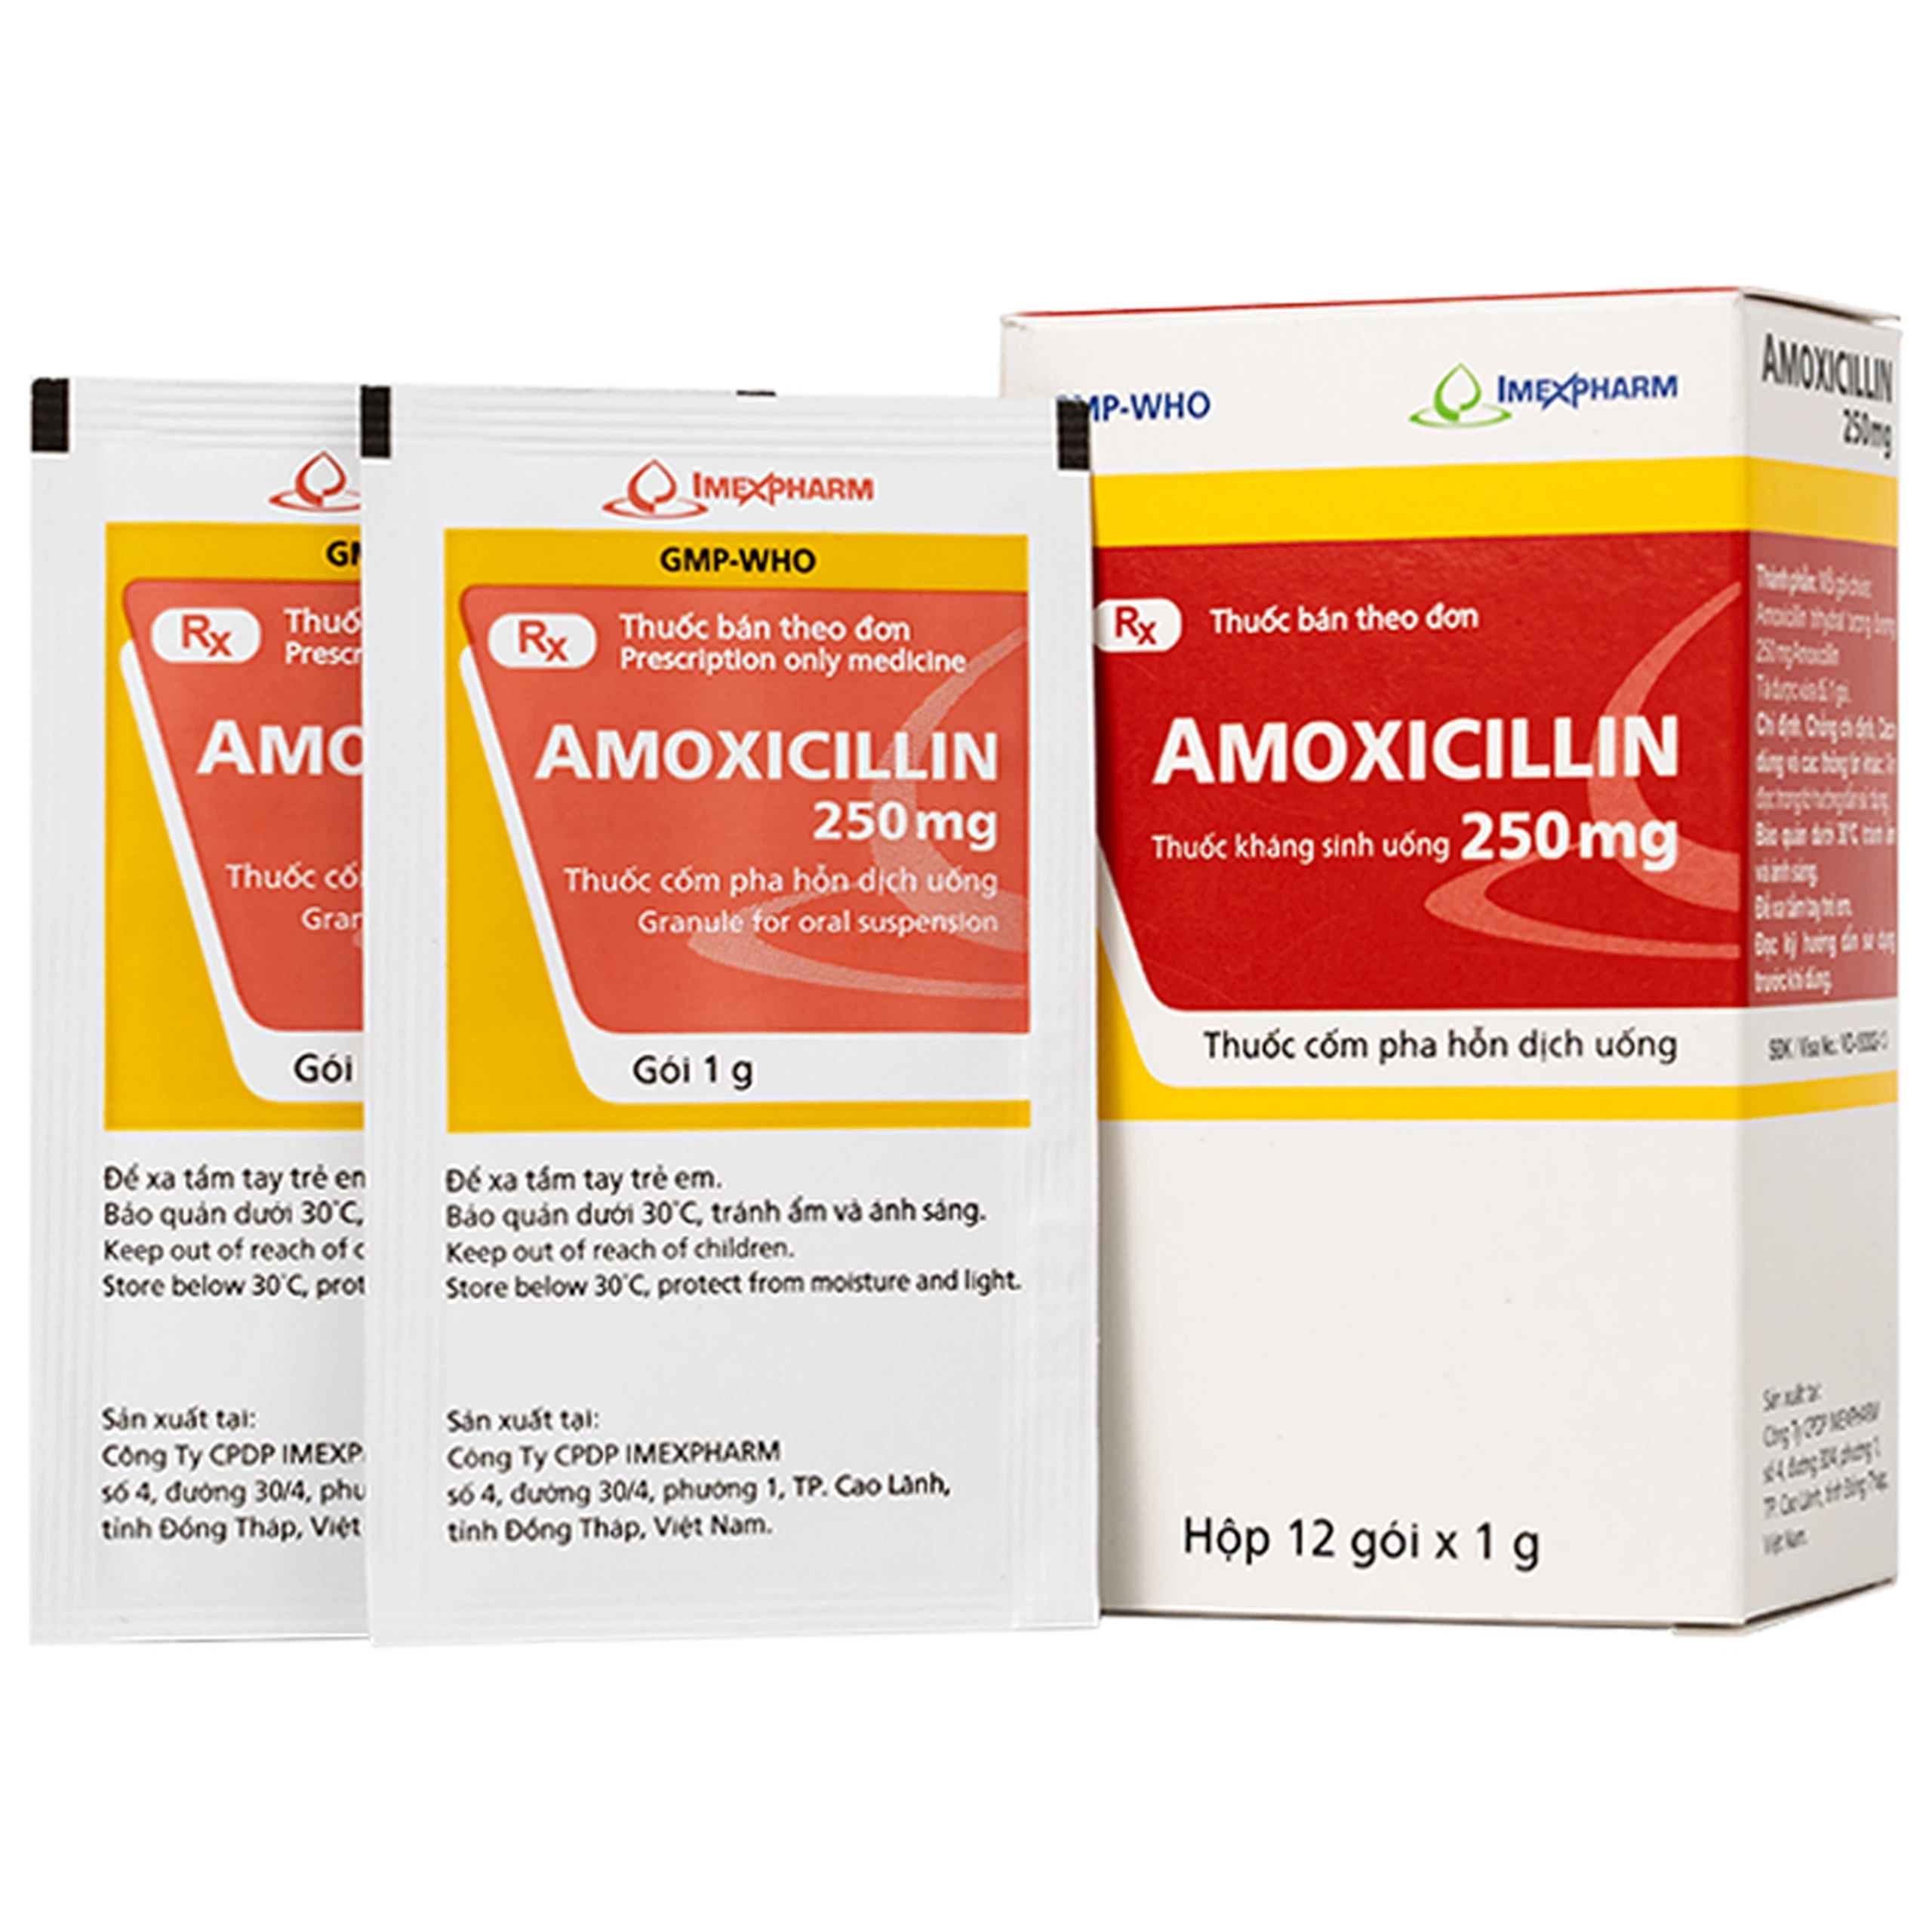 Hỗn dịch uống Amoxicillin 250mg Imexpharm điều trị nhiễm khuẩn đường hô hấp, đường mật, đường tiêu hóa (12 gói)